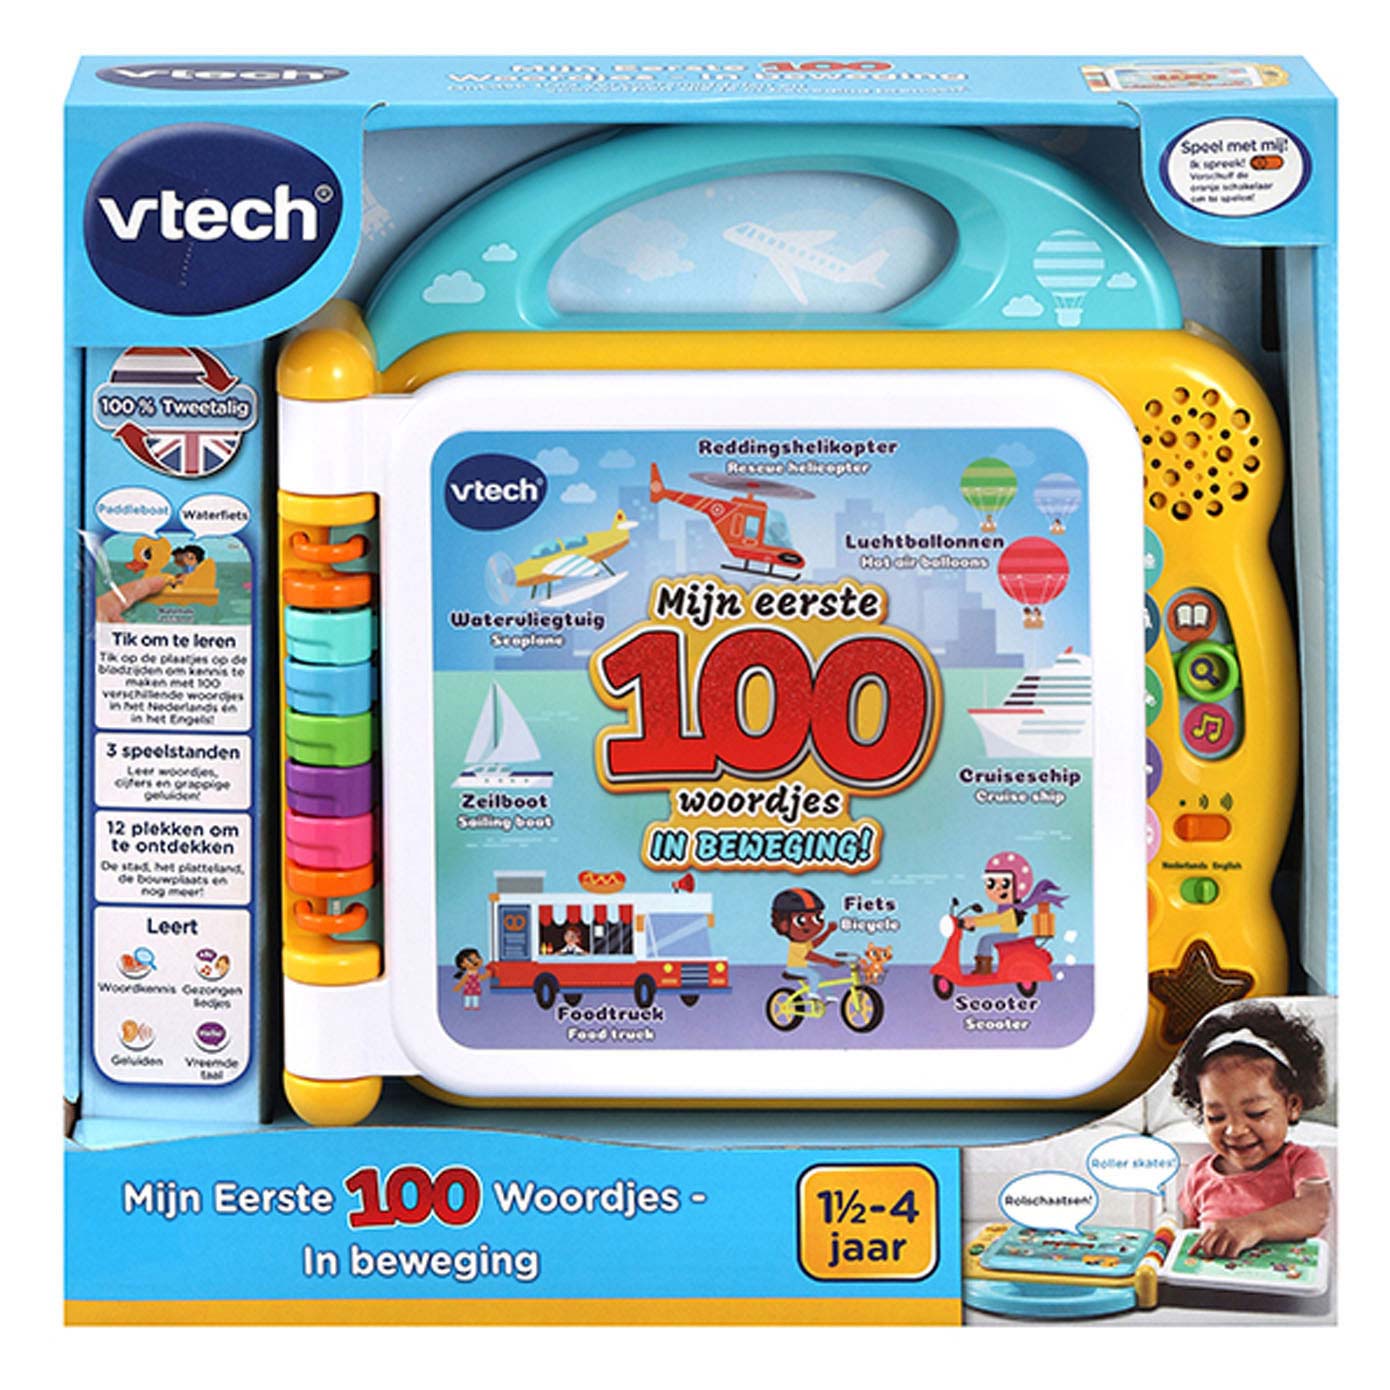 VTech mon premier imagier bilingue, VTech baby 100 Words Book